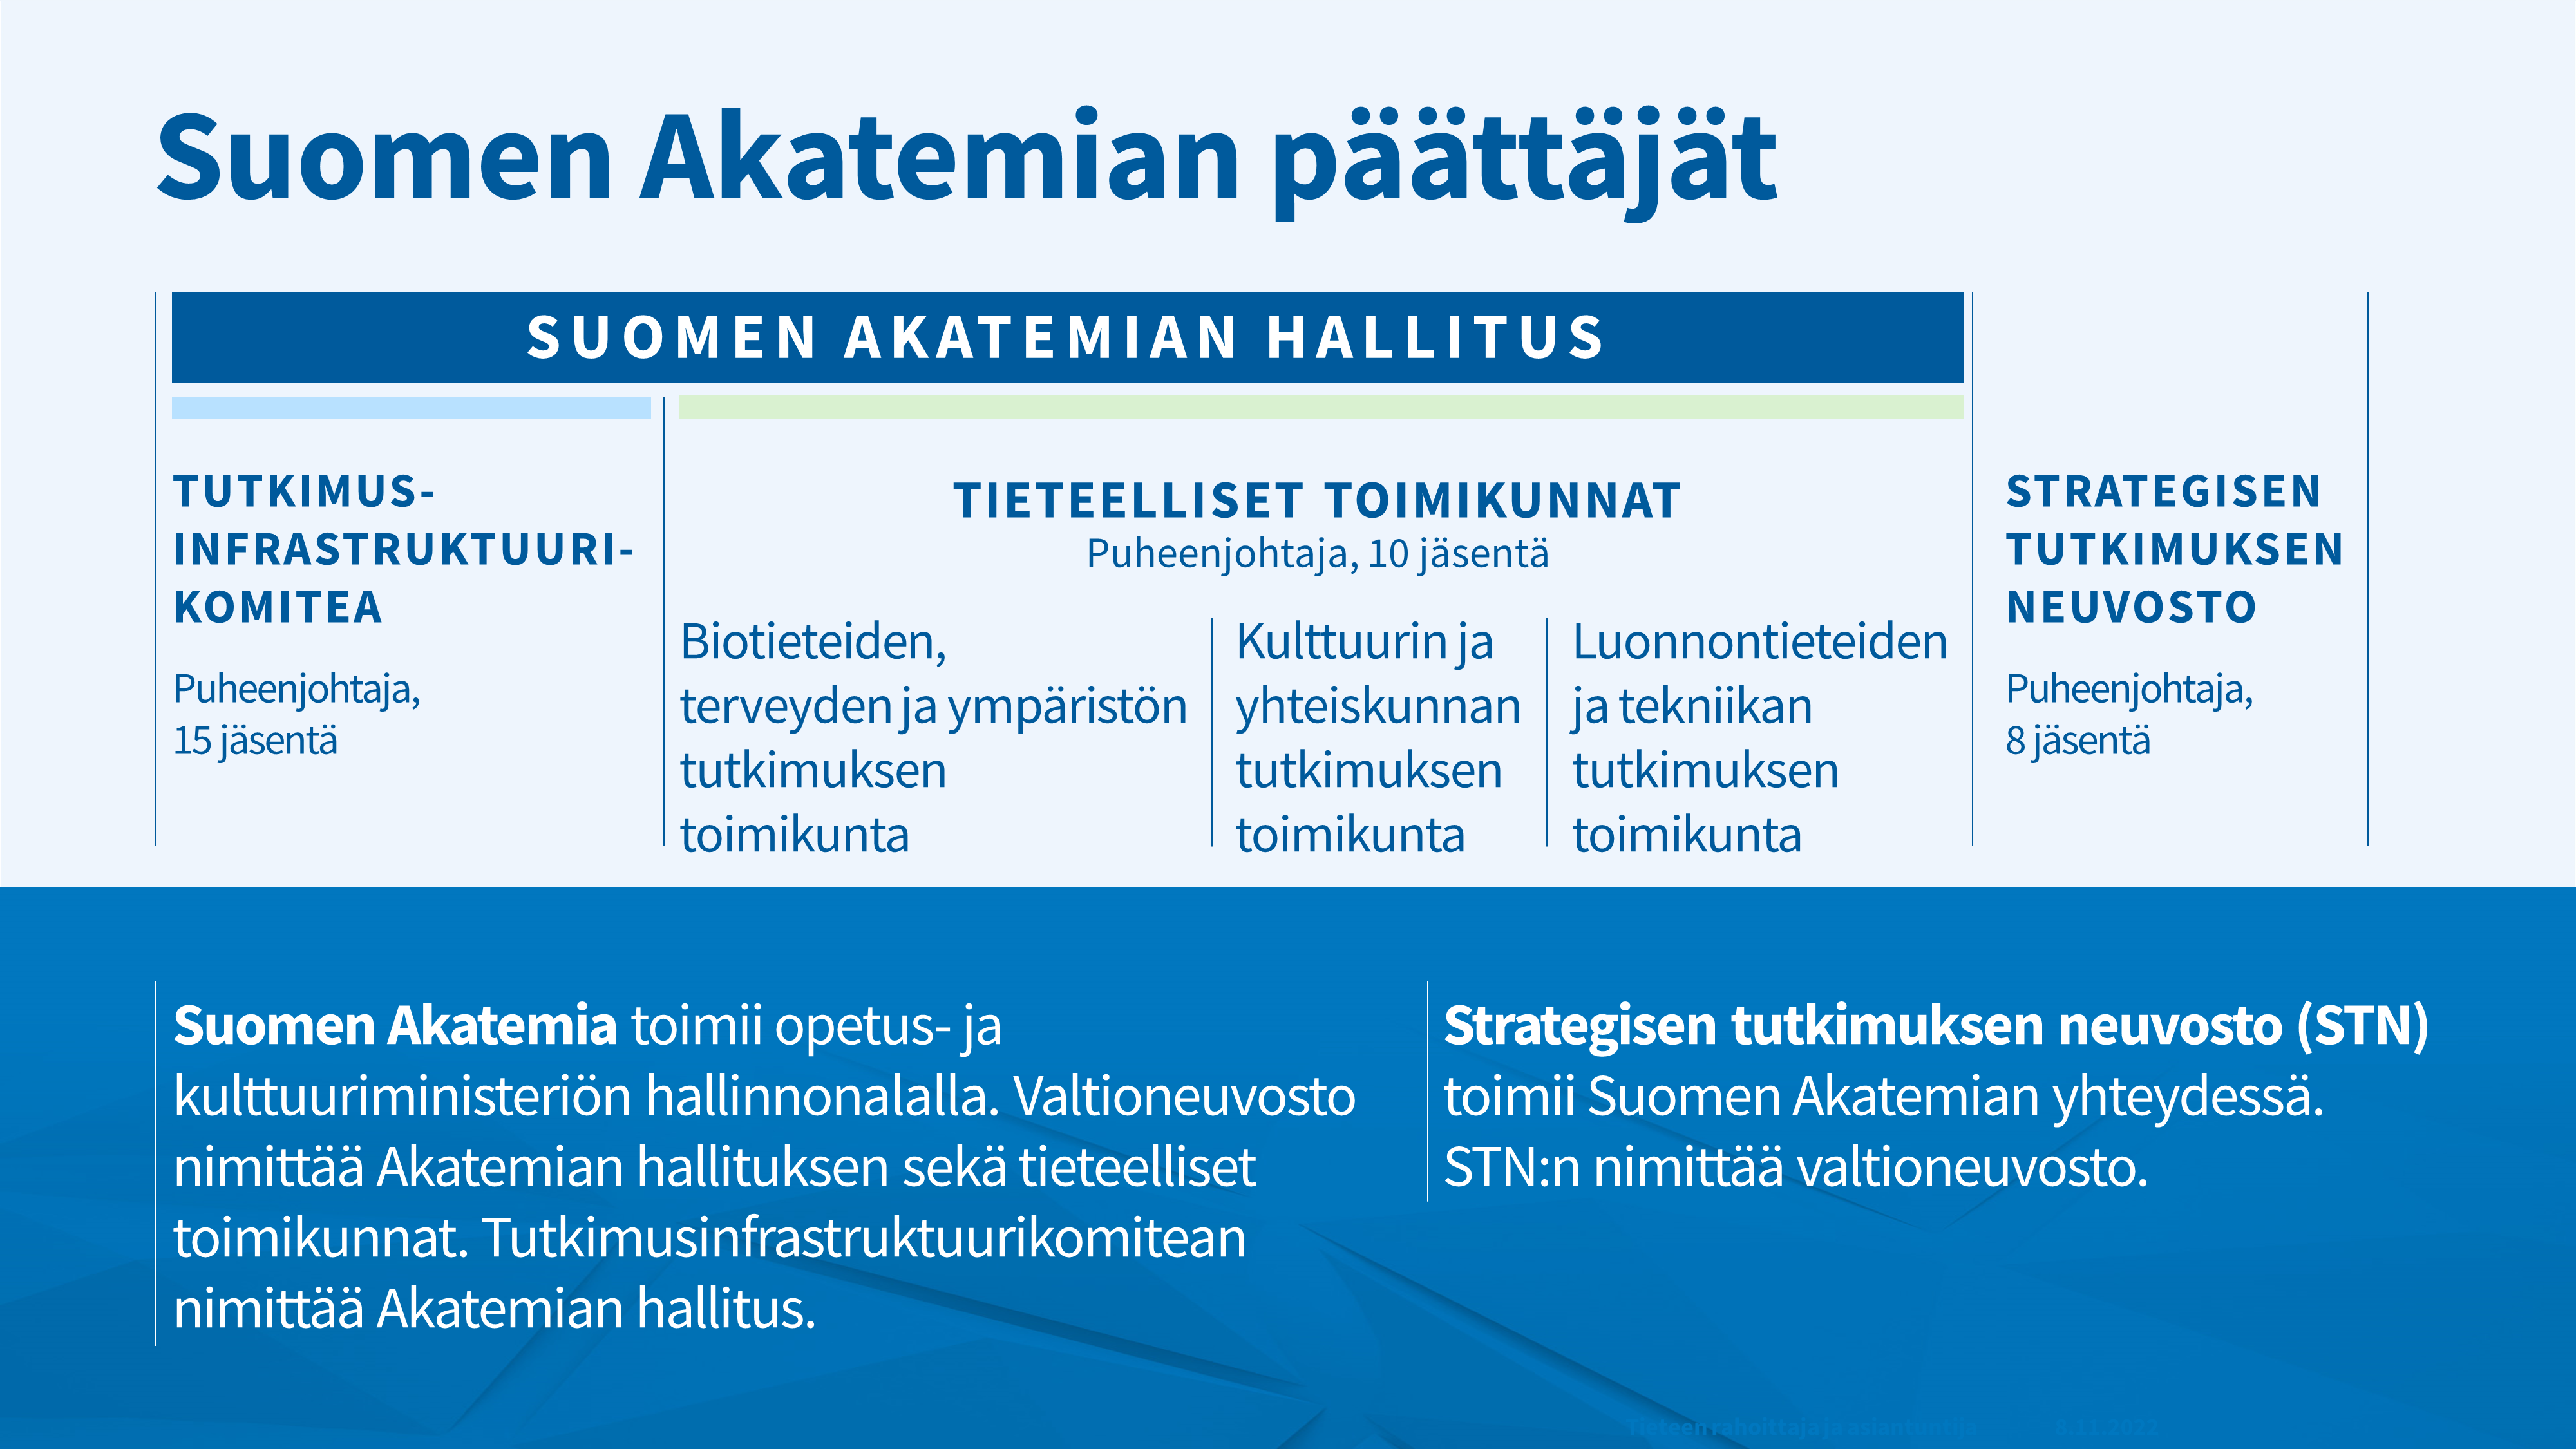 Näin päätökset tehdään - Suomen Akatemia